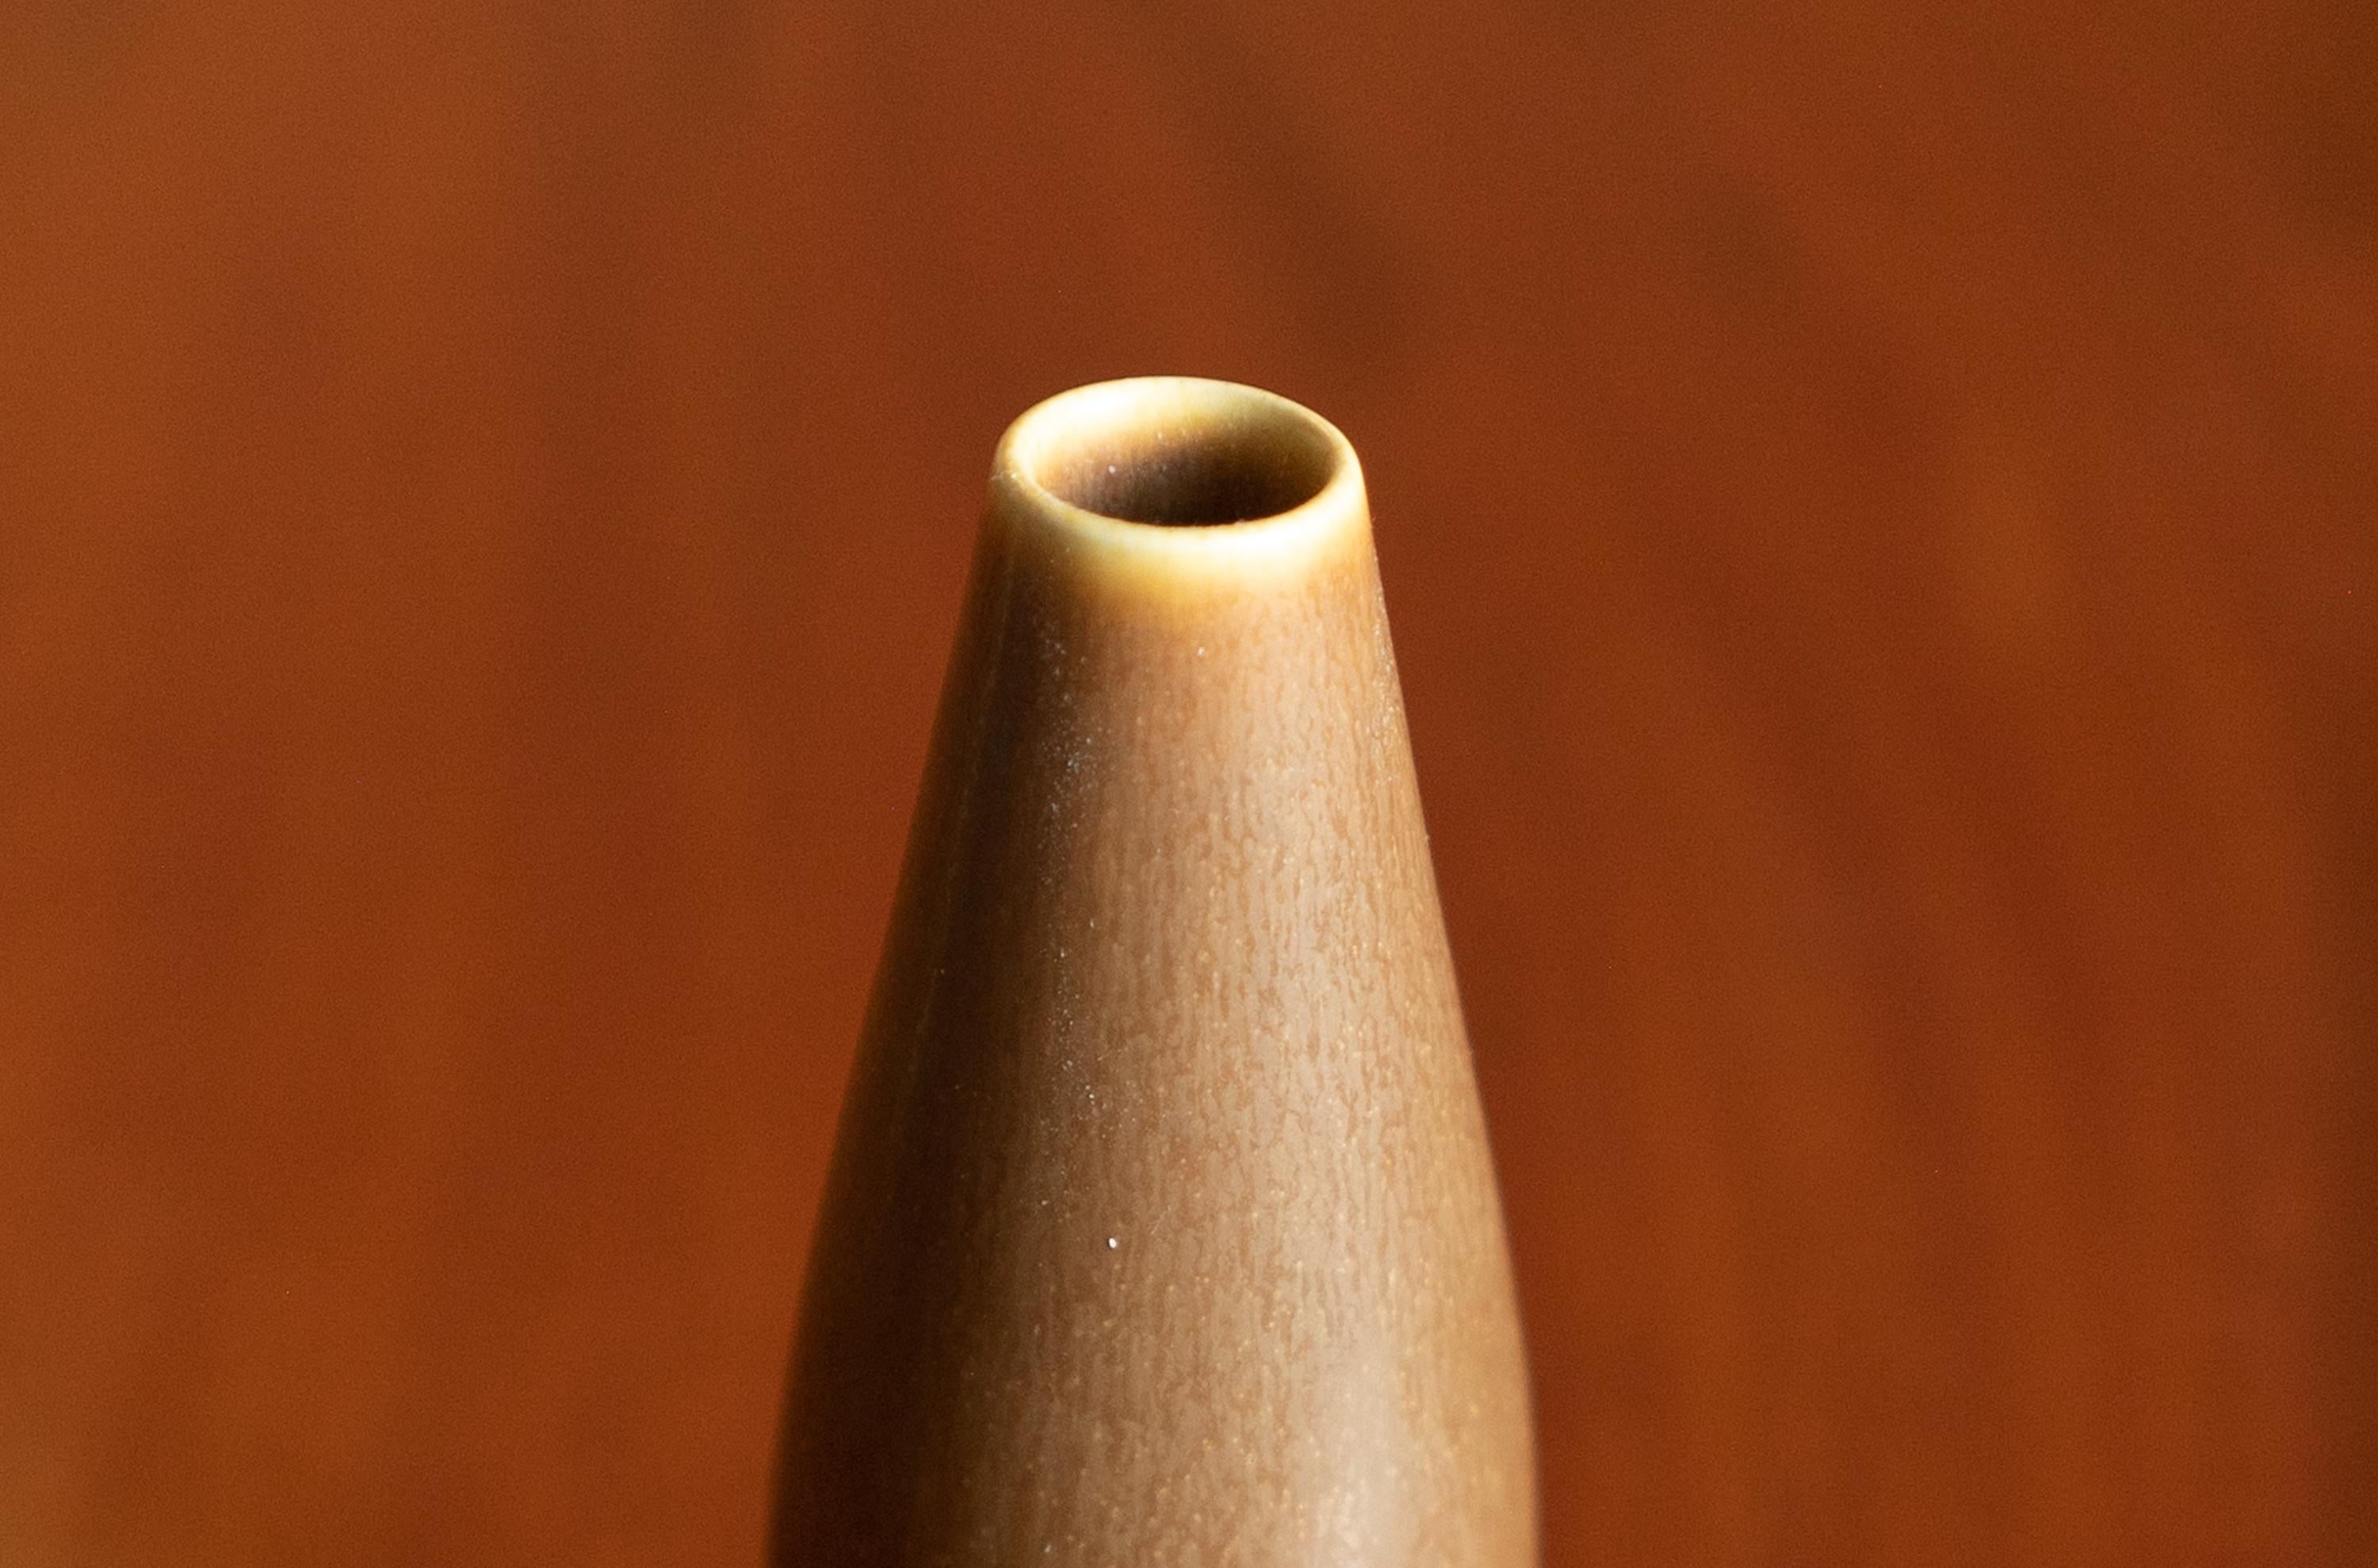 Grand vase danois en céramique du milieu du siècle par Palshus, années 1960
Grand vase moderne danois Palshus en glaçure HaresFur de couleur terre. Un exemple parfait du minimalisme moderne danois. Conçu par Per Linnemann-Schmidt pour Palshus